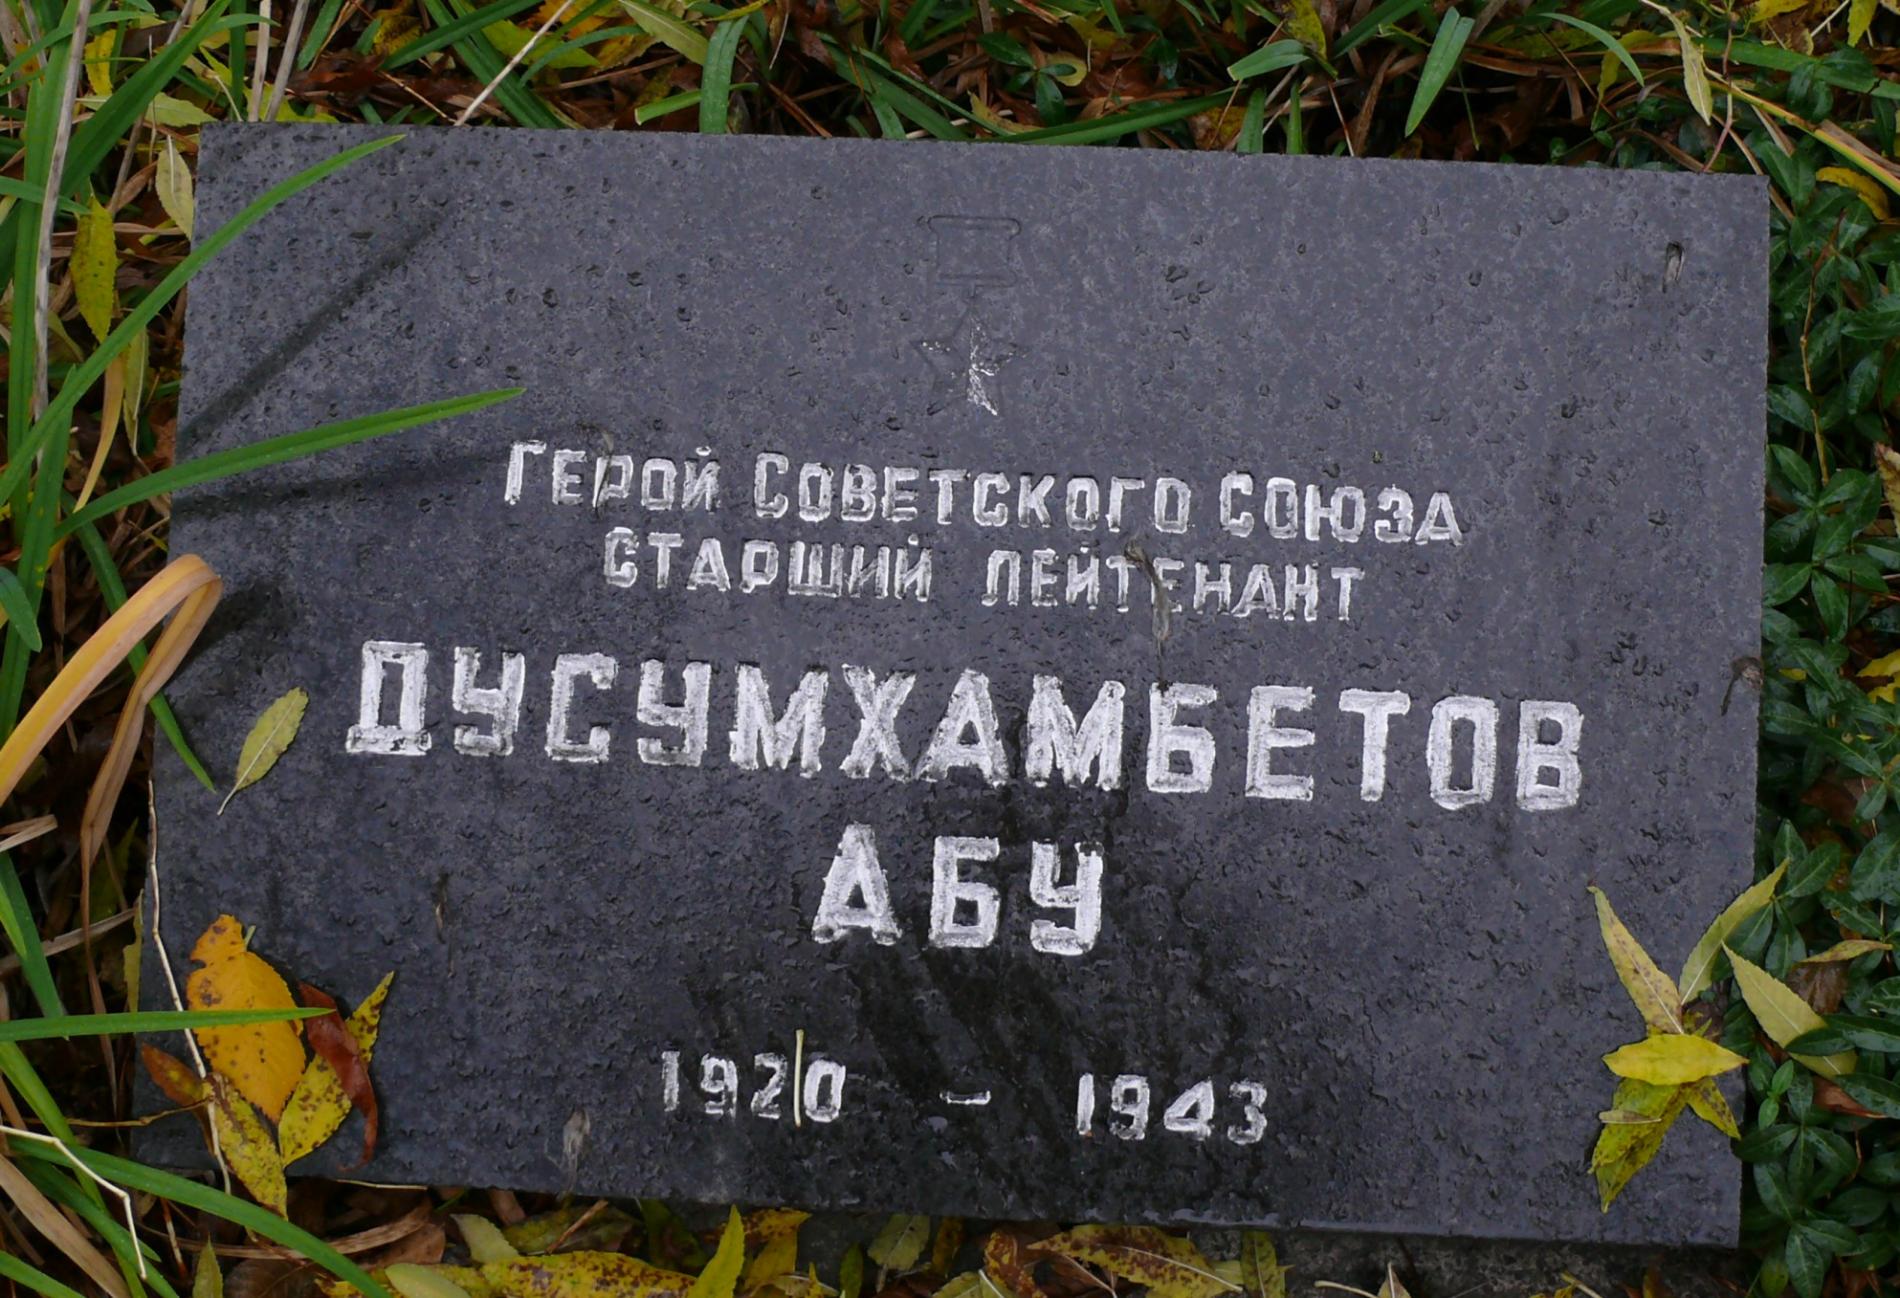 Могила Героя Советского Союза Абу Дусумхамбетова в Парке Славы г. Чернобыль